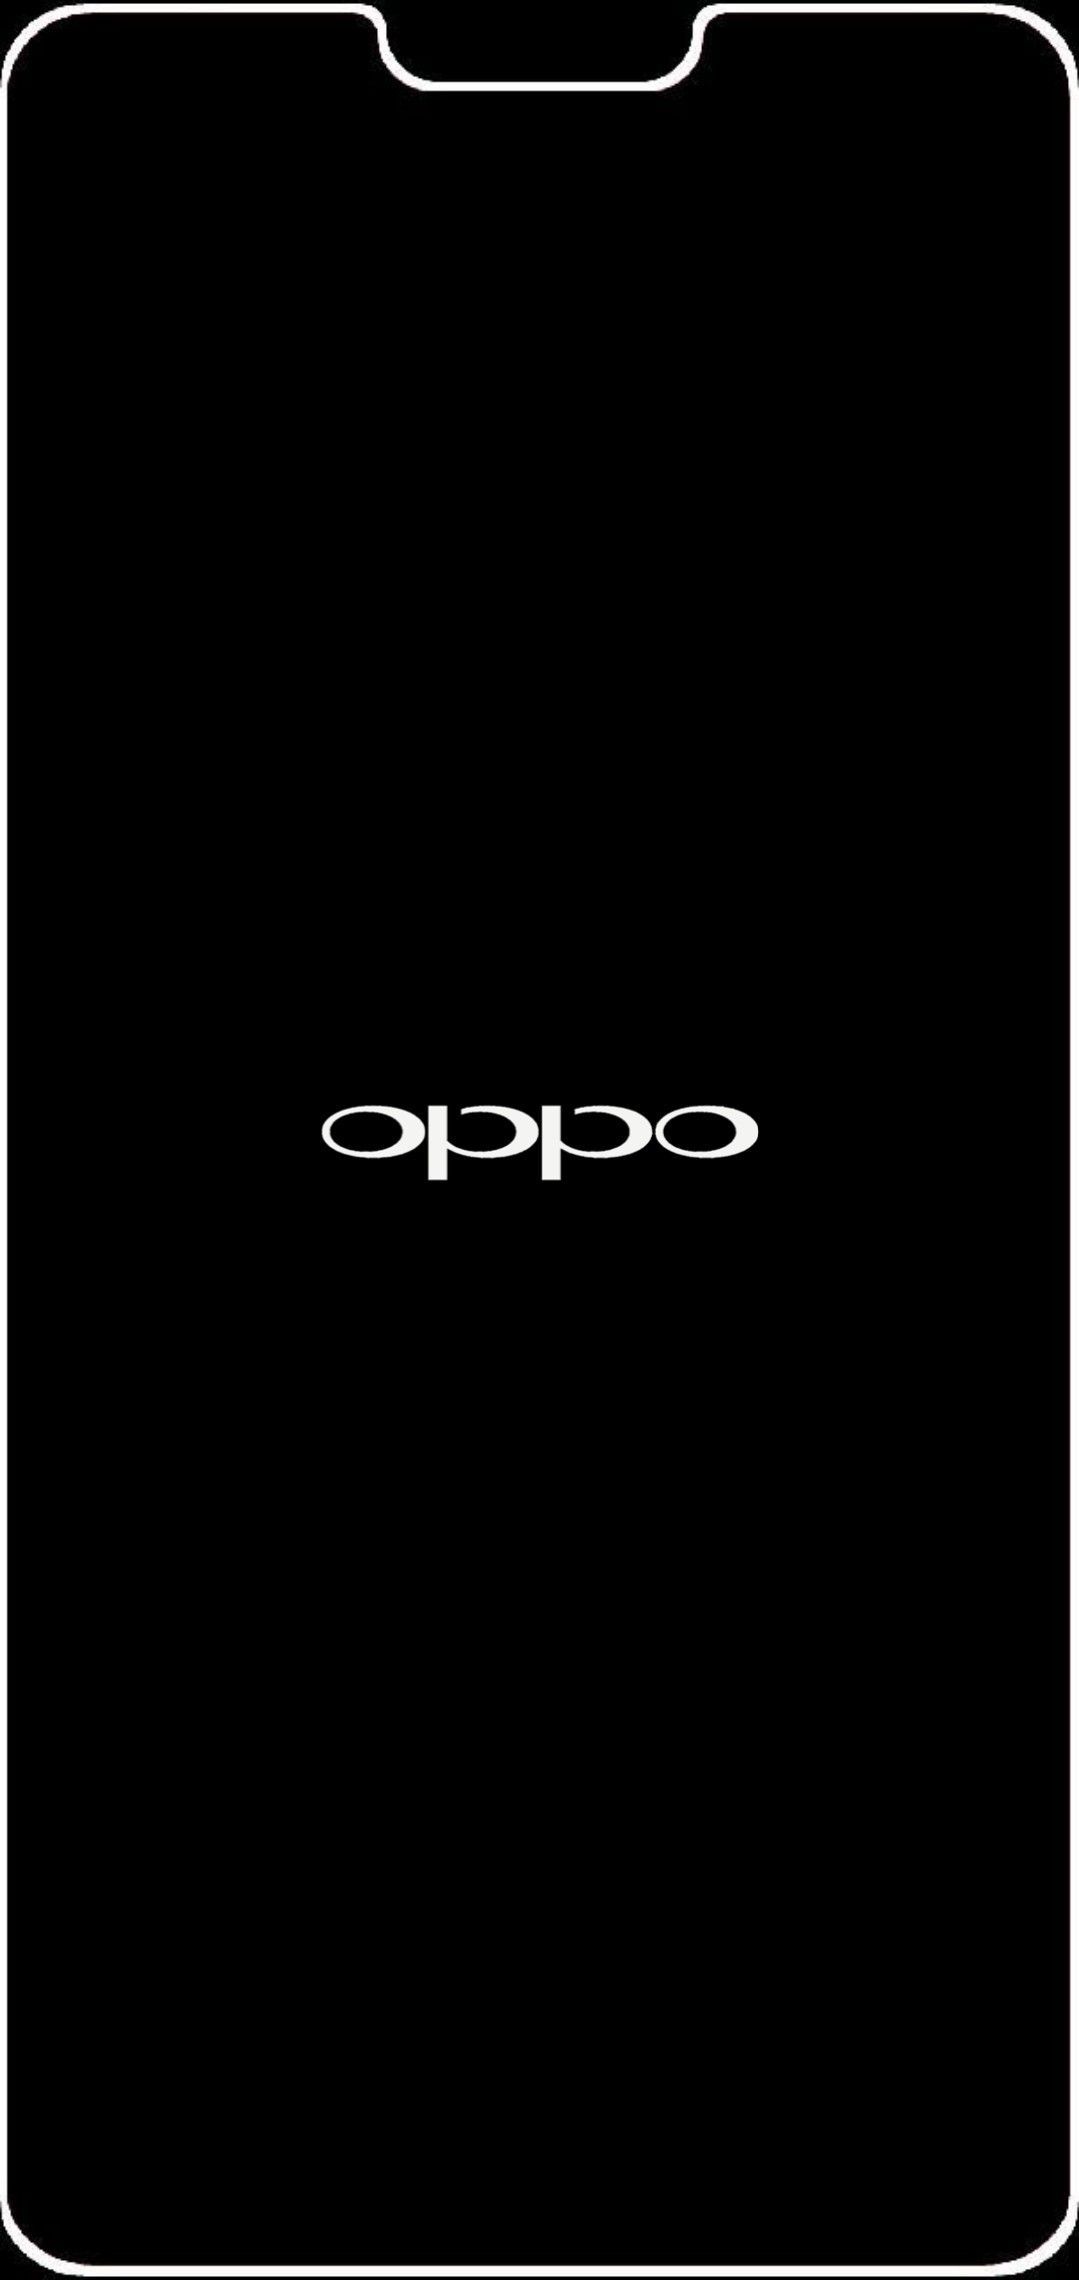 Oppo white and black border light frame 1080x2280. Gambar